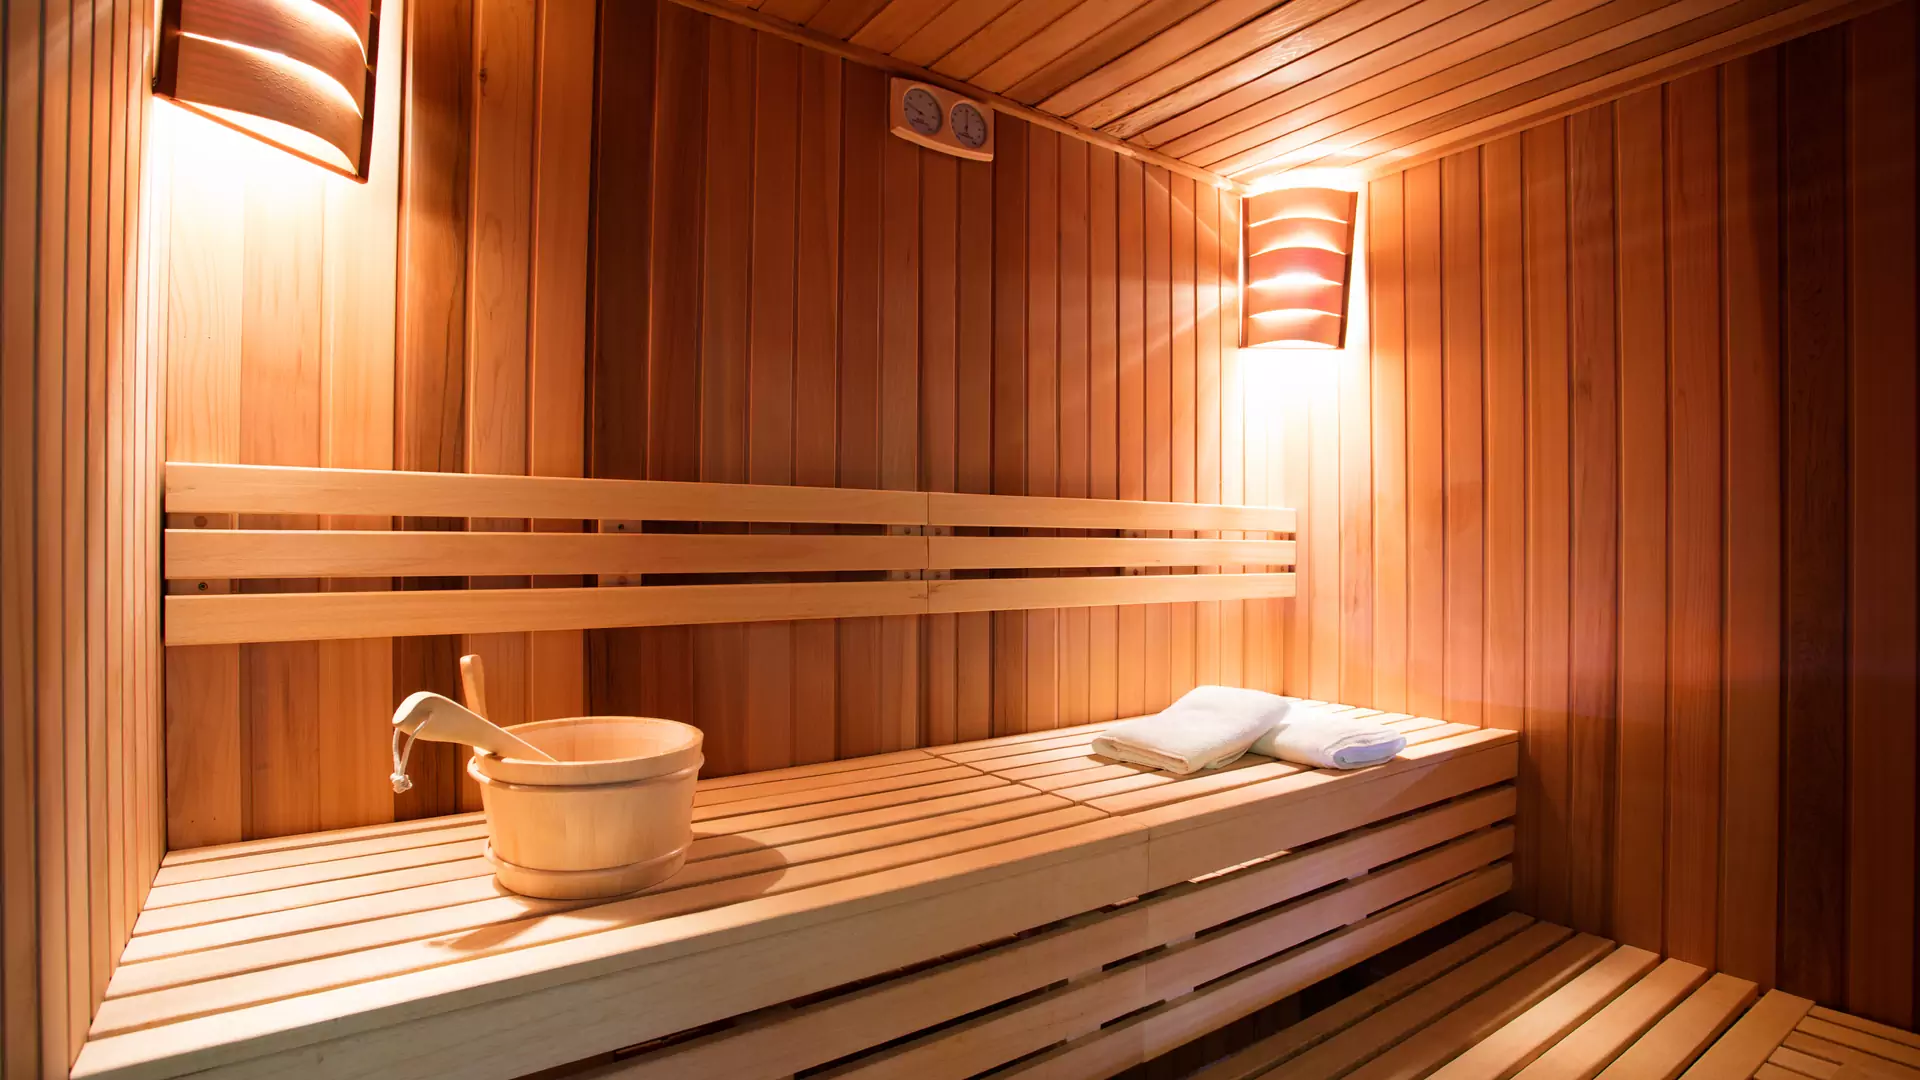 Ile kosztuje zakup i utrzymanie domowej sauny? Sprawdzamy